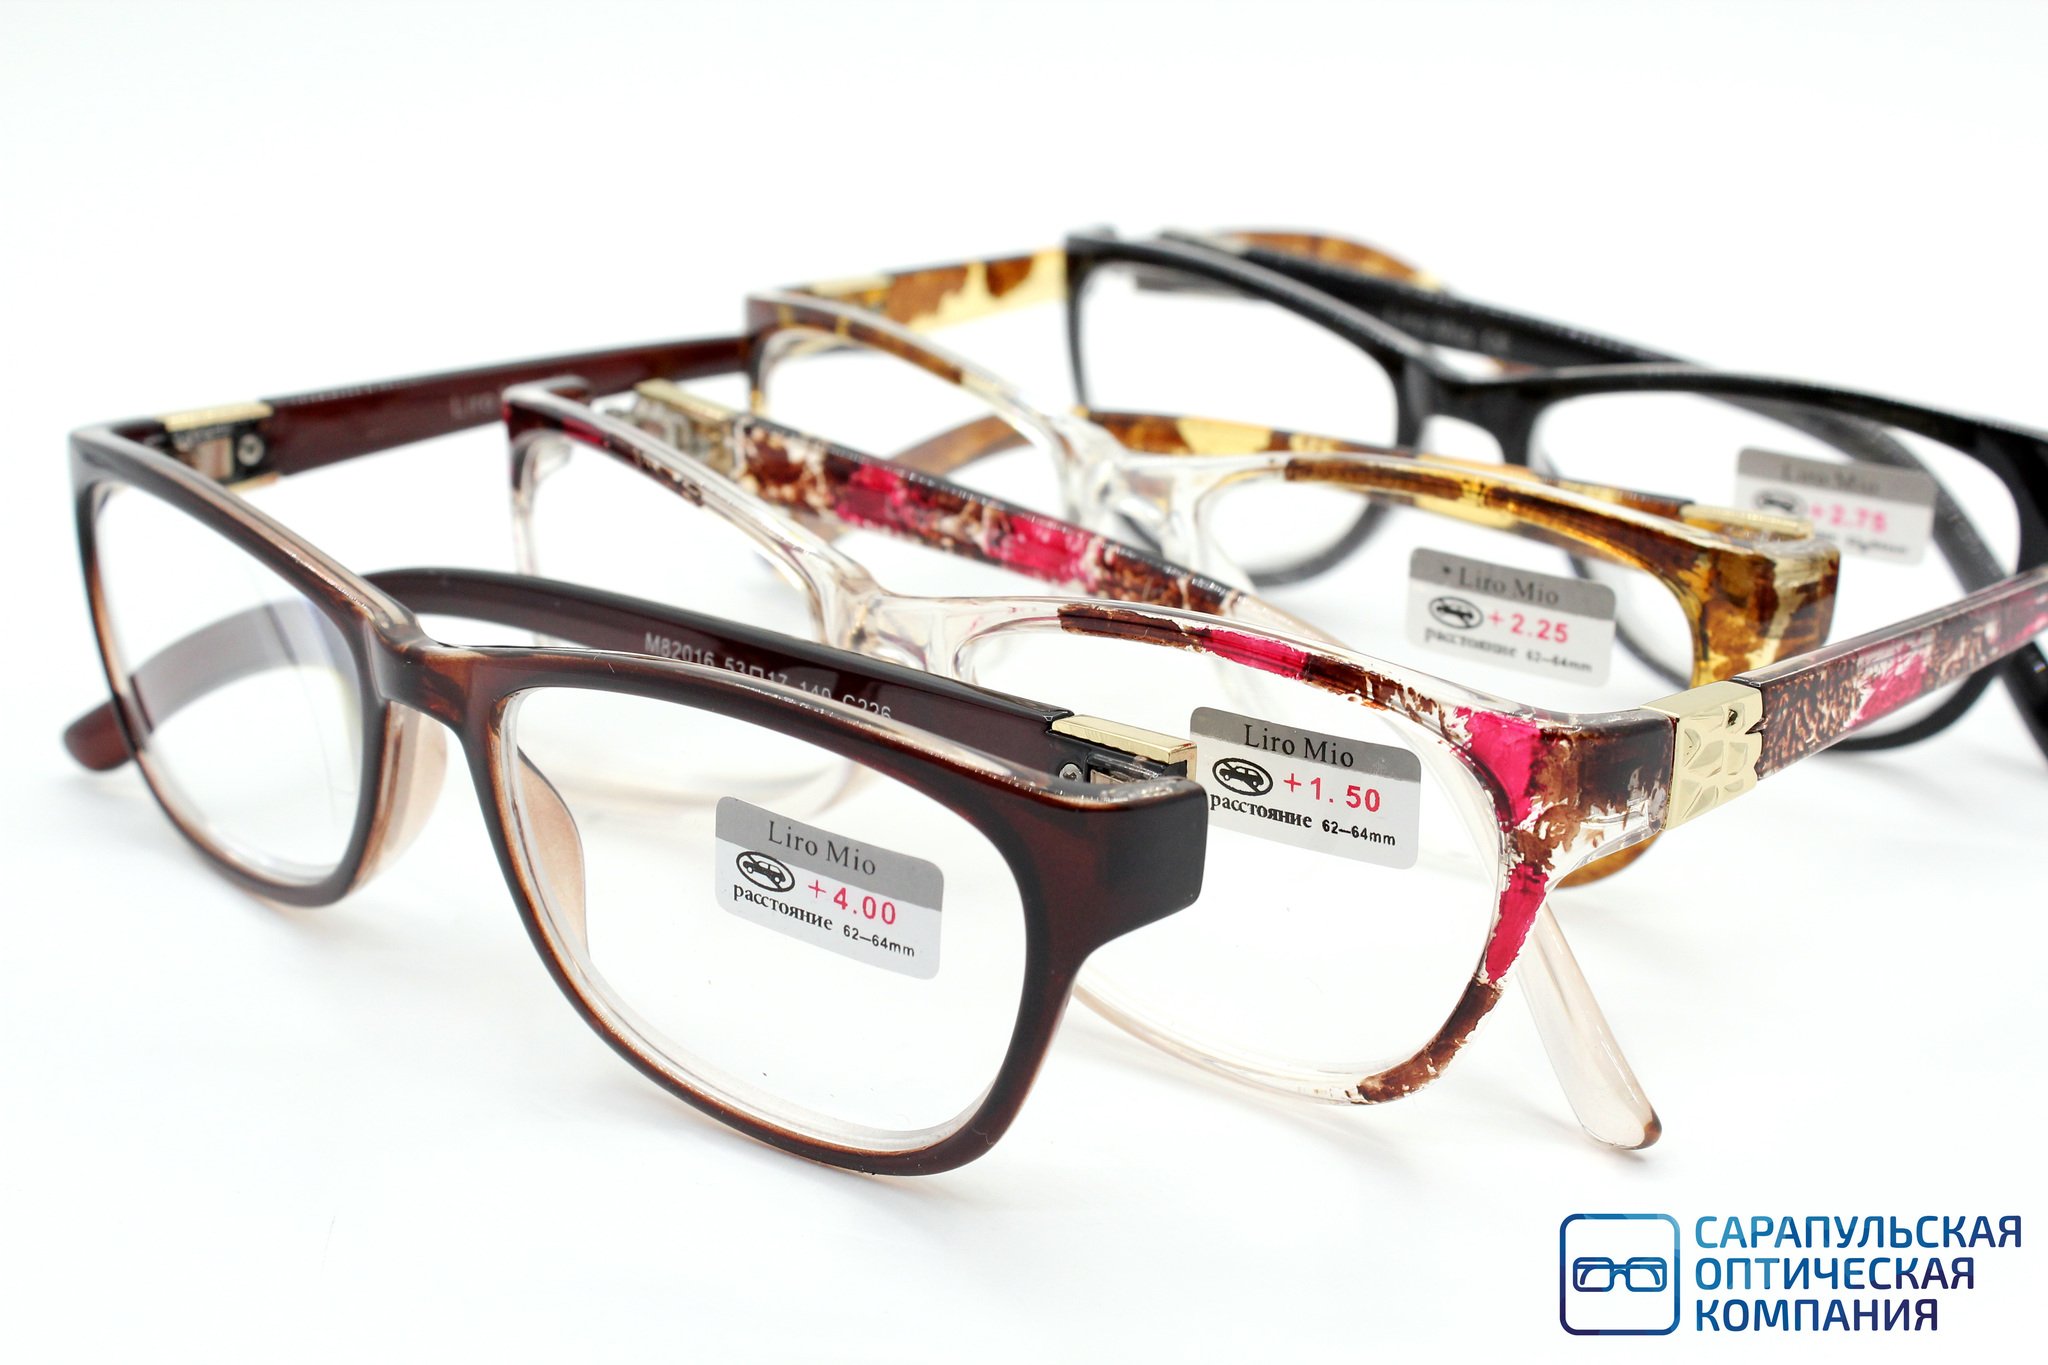 Очки готовые с диоптриями купить в москве. Оправа Liro mio. Оптика очки. Оптические очки. Очки готовые.